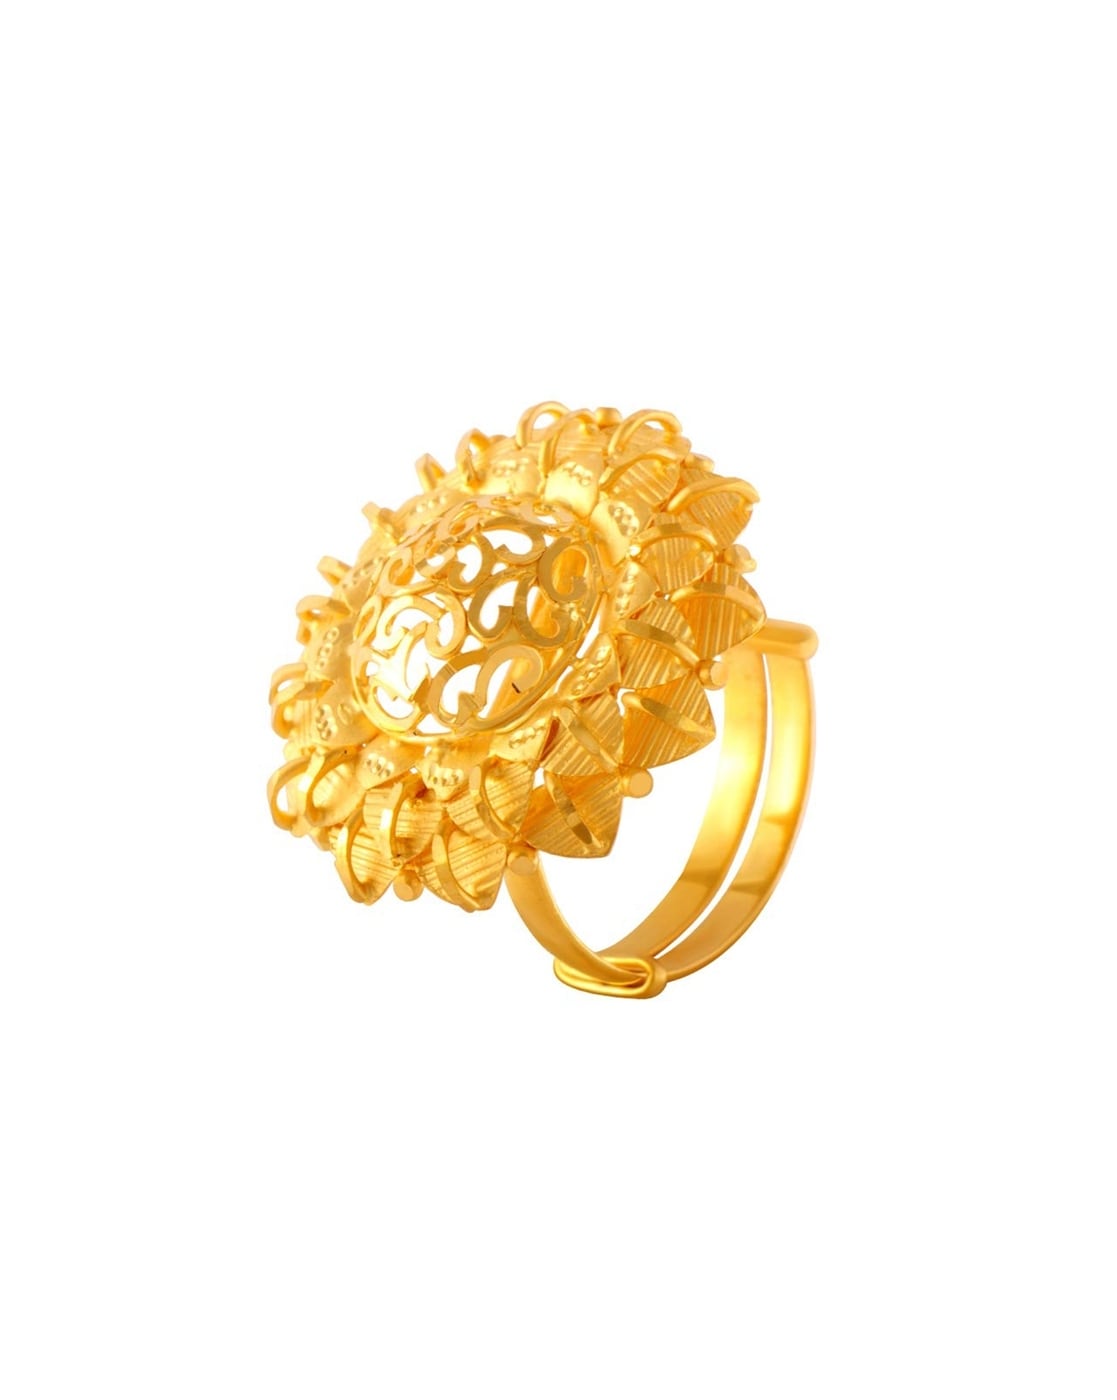 22 Kt 22KT Yellow Gold Ring at Rs 8083 in Kolkata | ID: 20971355488